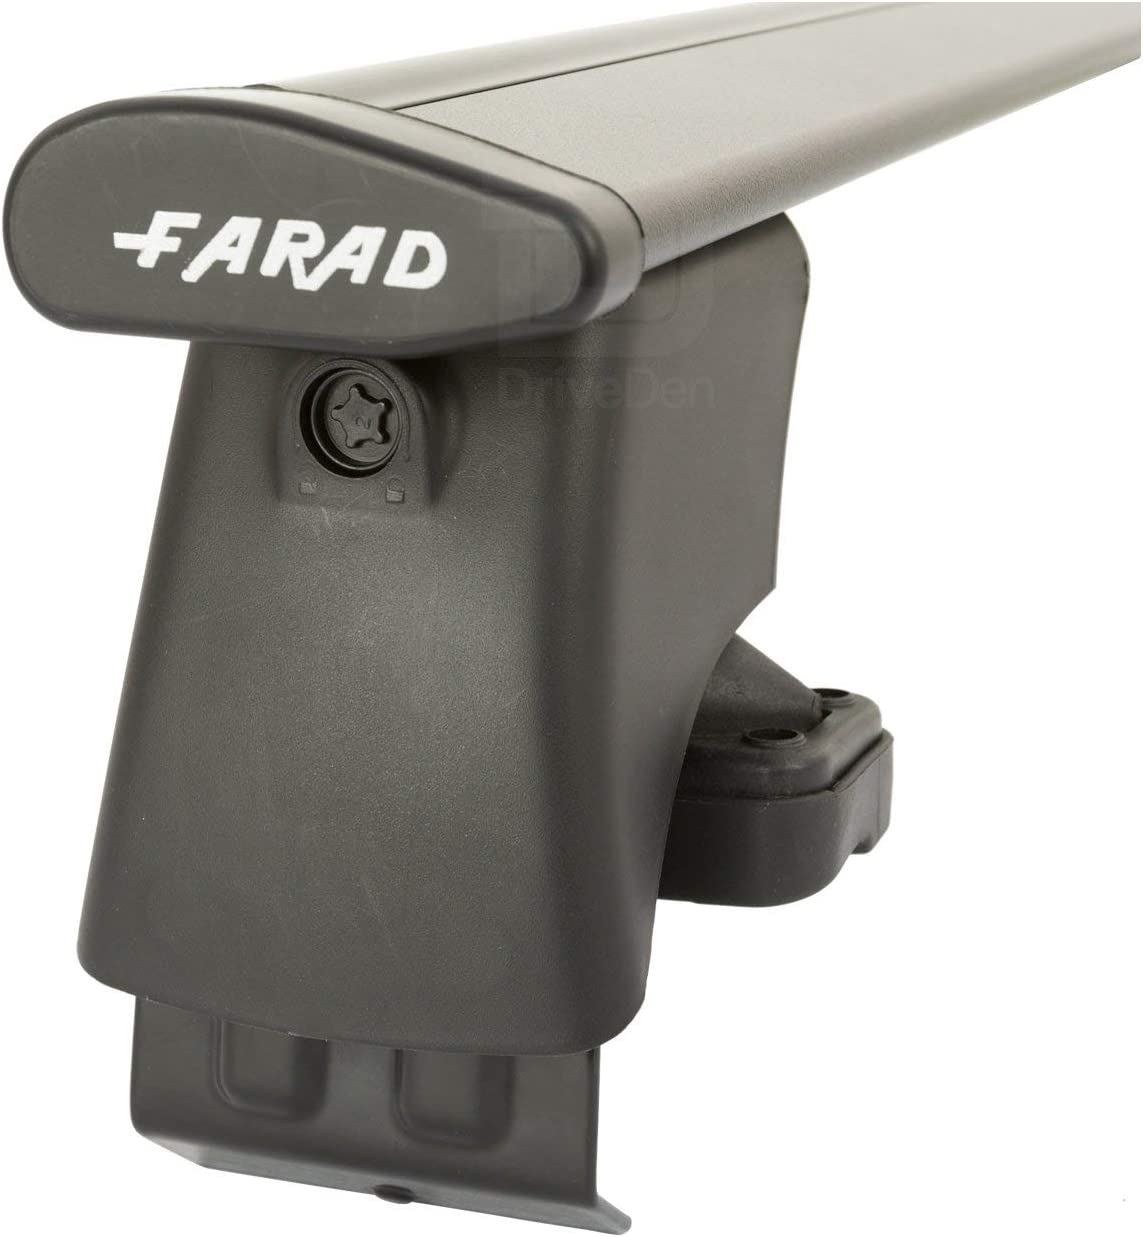 FARAD-Kit H2 per barre portatutto - Kia Rio 2017> (senza corrimano)